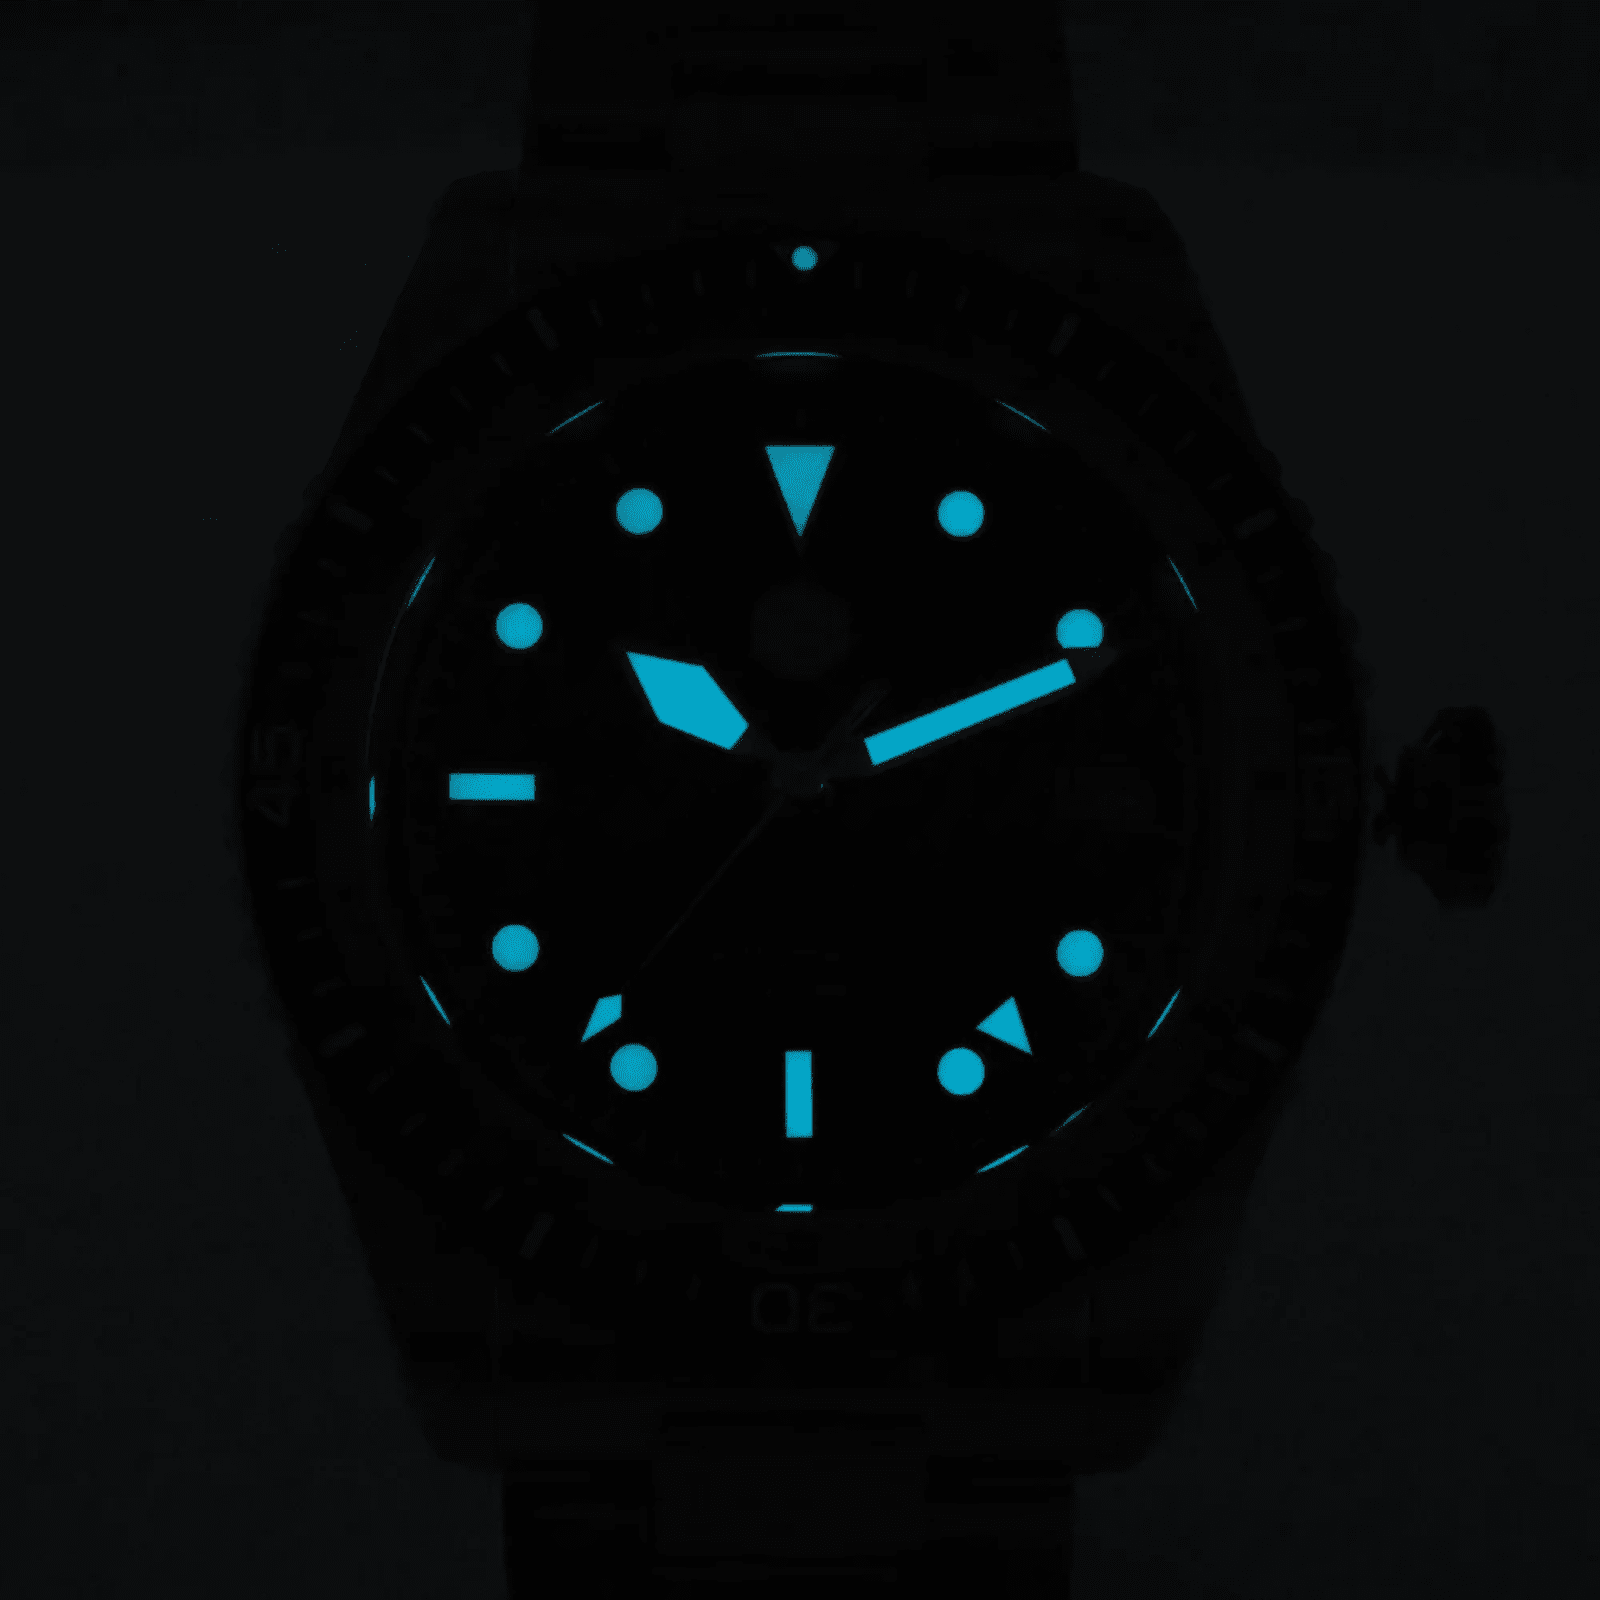 San Martin NH34 GMT Bidirectional Bezel Light Date SN0112G - Steel Bezel san martin watches india online